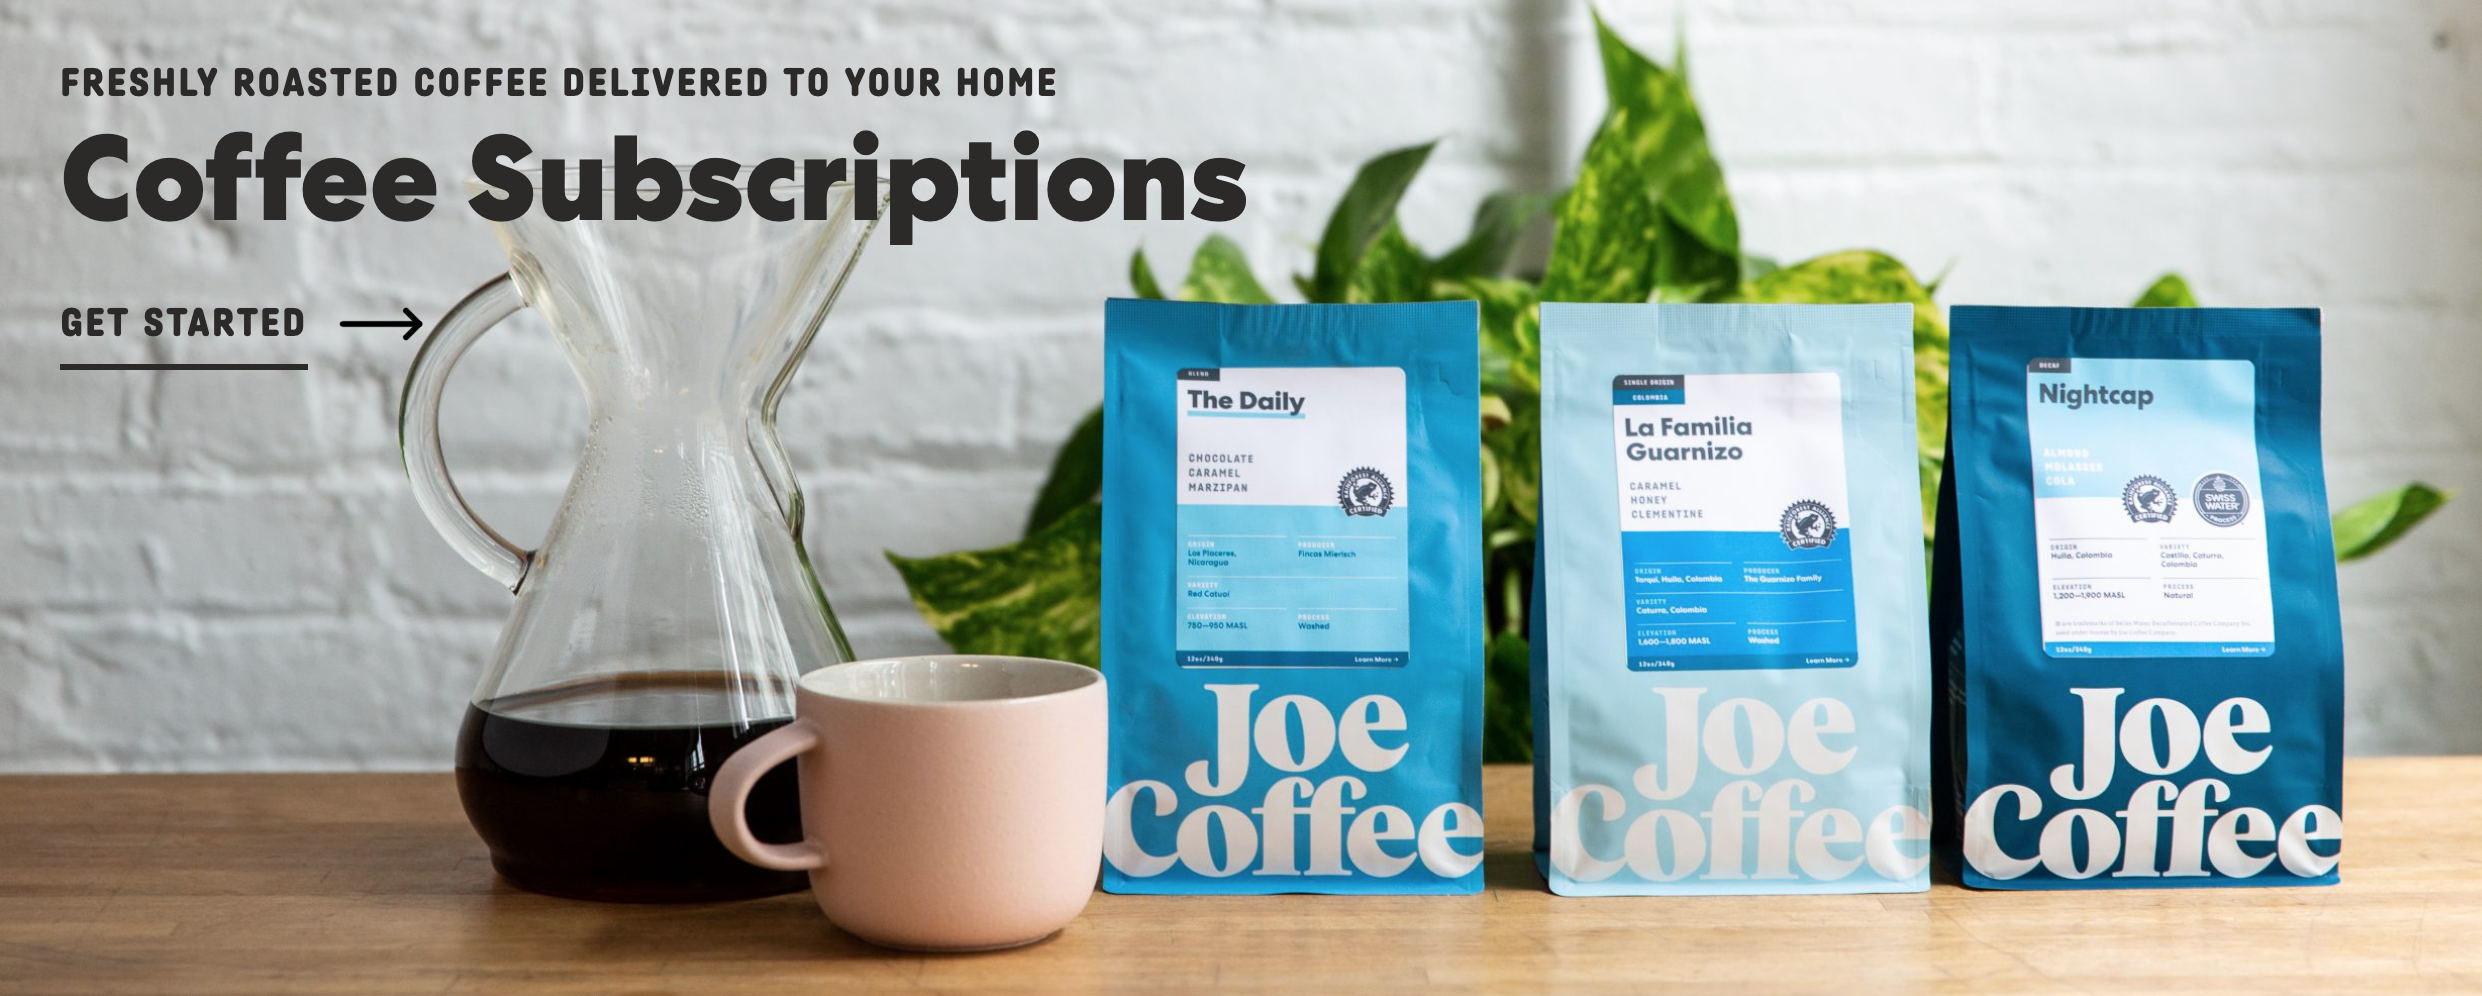 咖啡品牌Joe Coffee Company启动新logo 和包装